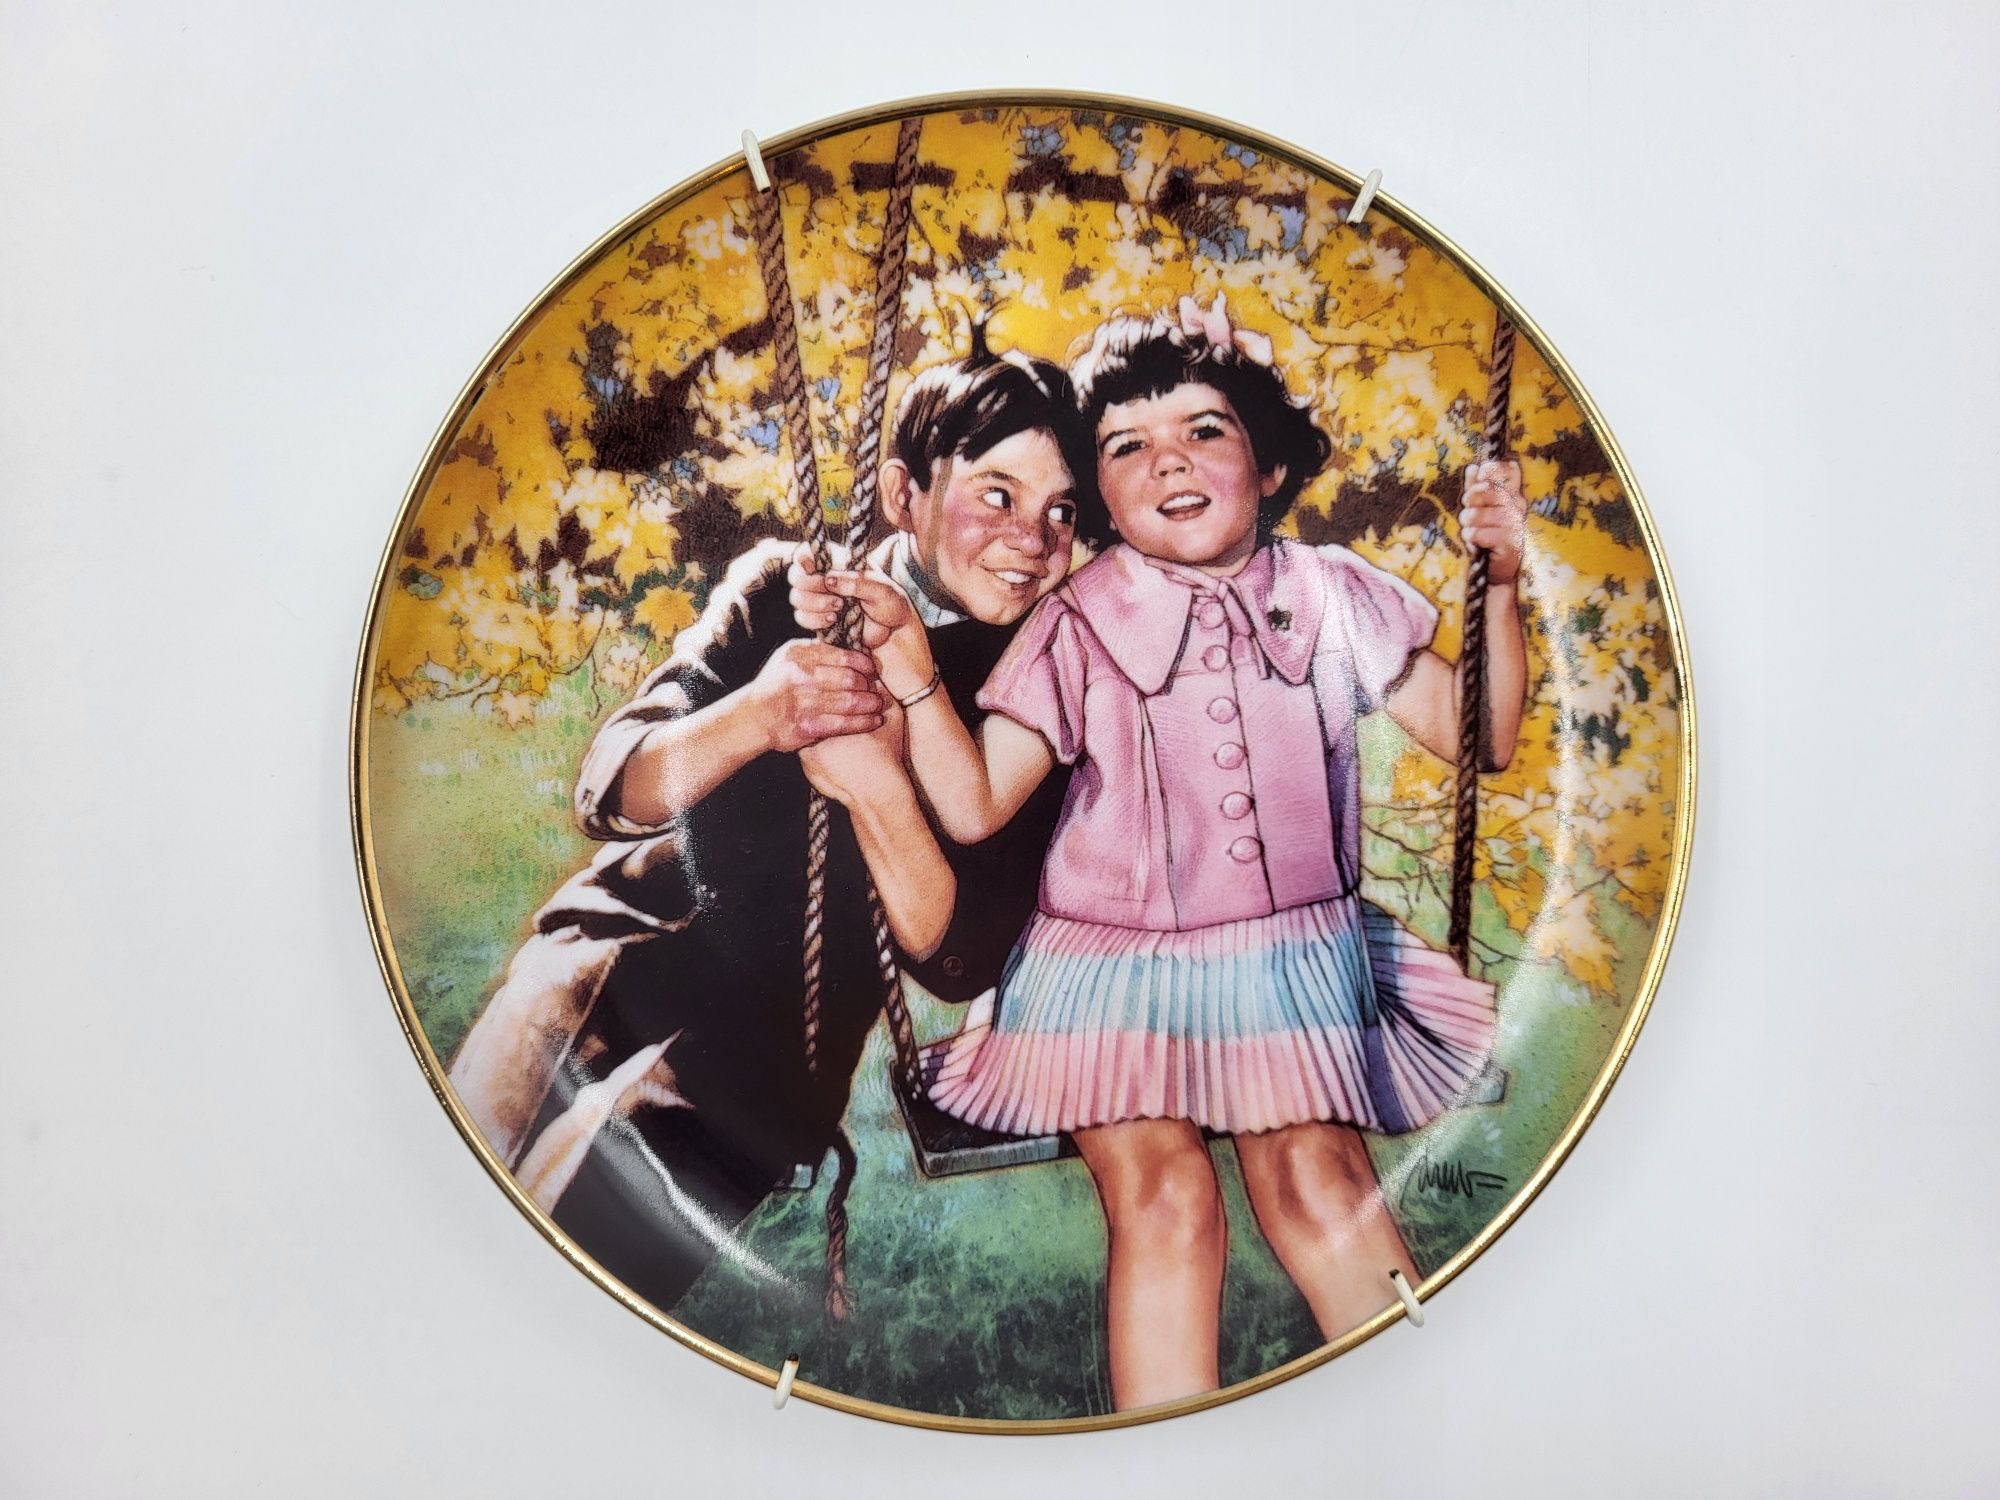 Śliczny porcelanowy dekoracyjny talerz z zakochaną parą